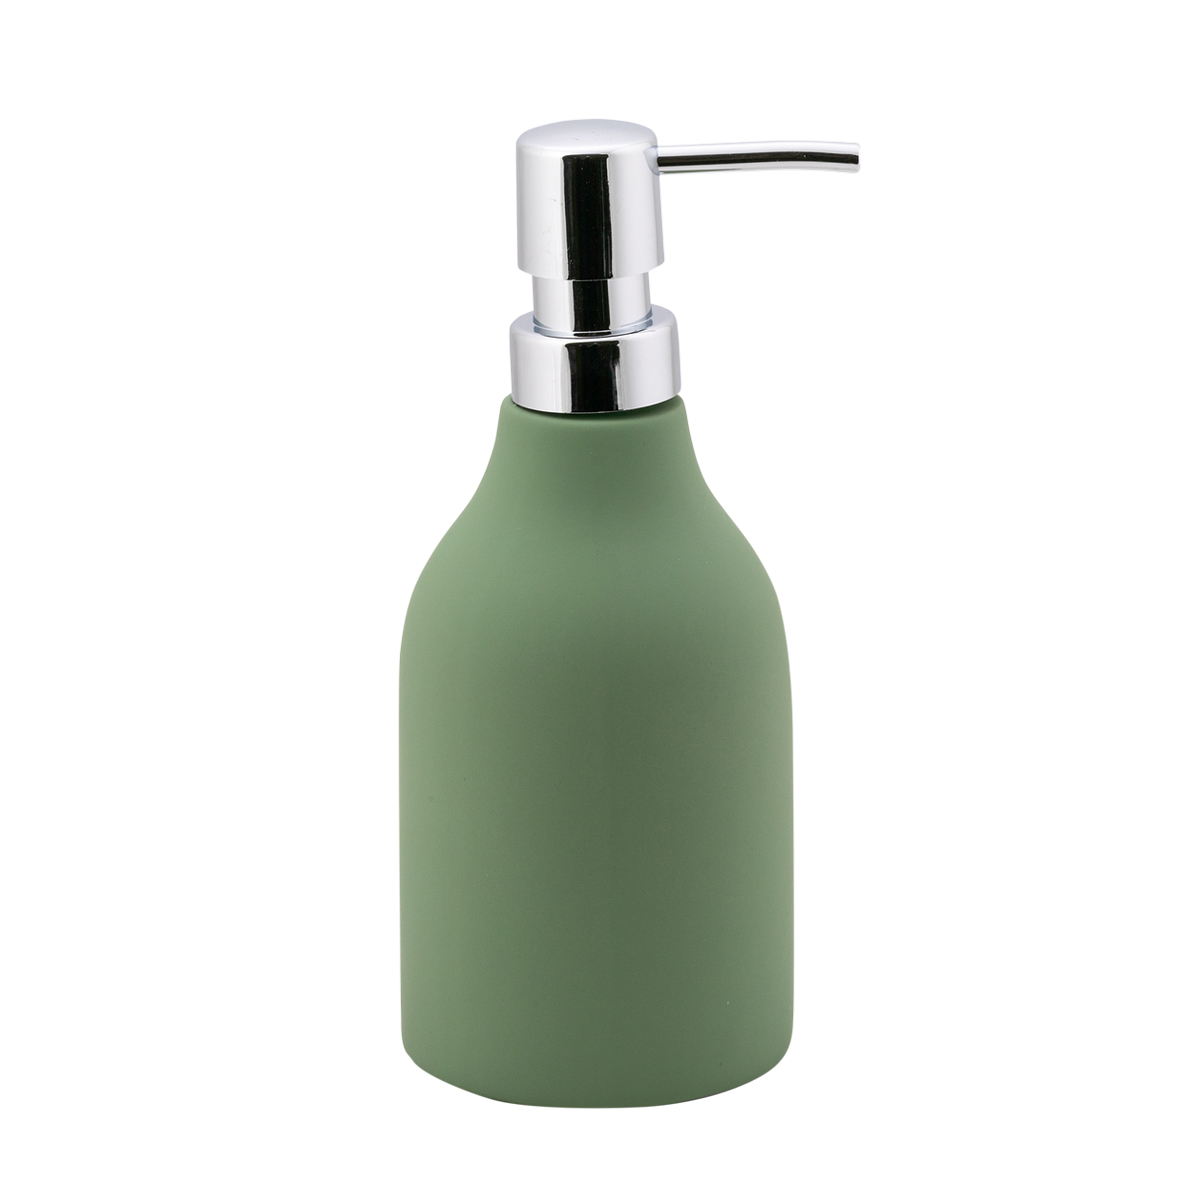 Дозатор для жидкого мыла "unna" керамика/резина (оливковый) (1/12) "swensa" swtc-1204olv-01